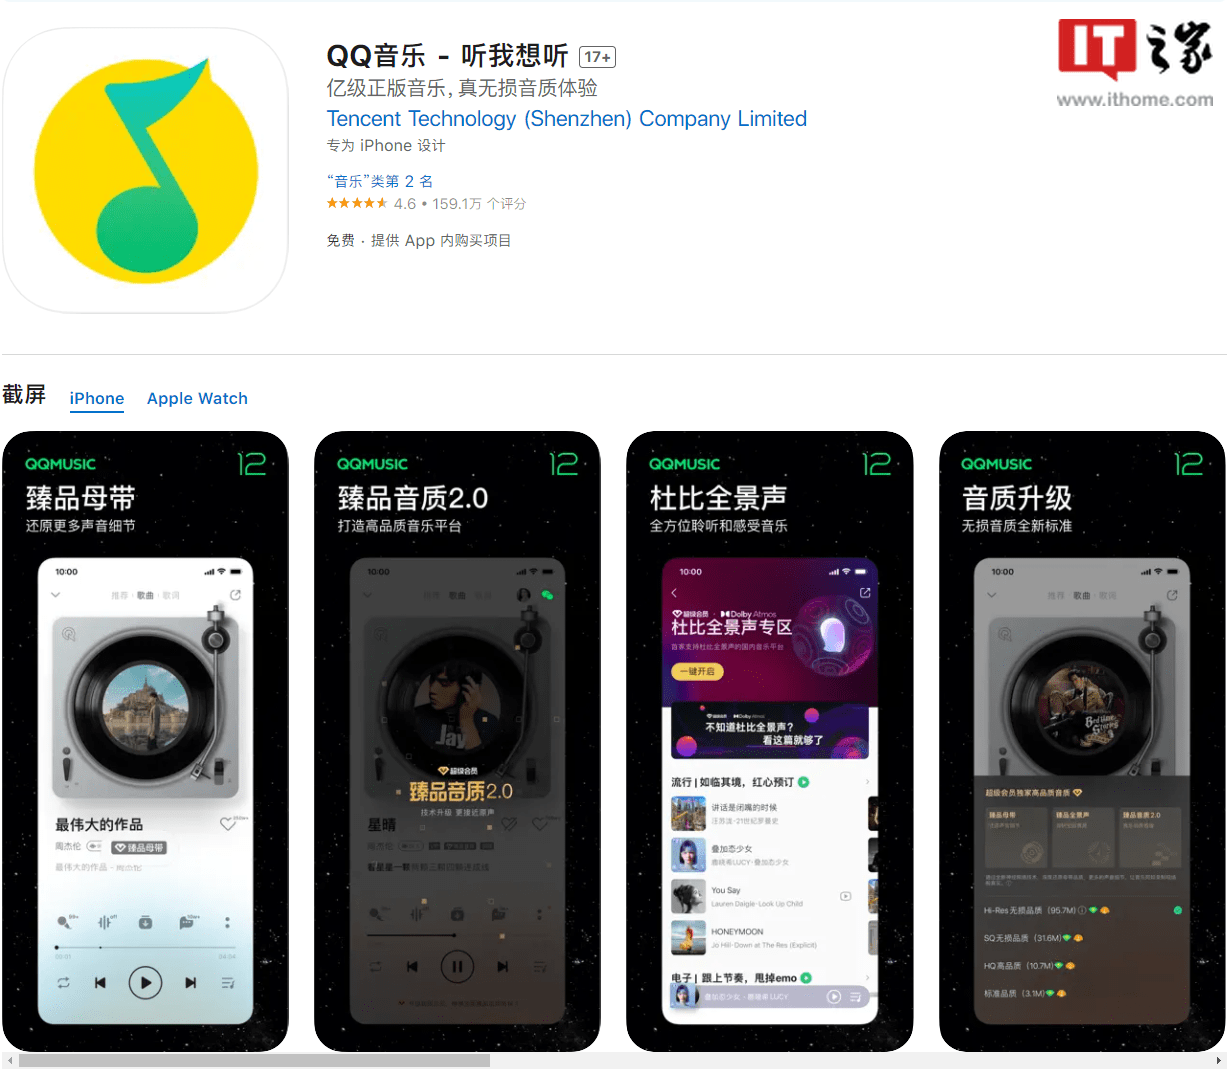 安卓版苹果音乐资料库:腾讯 QQ 音乐 iOS / 安卓版 12.1 发布-第1张图片-太平洋在线下载